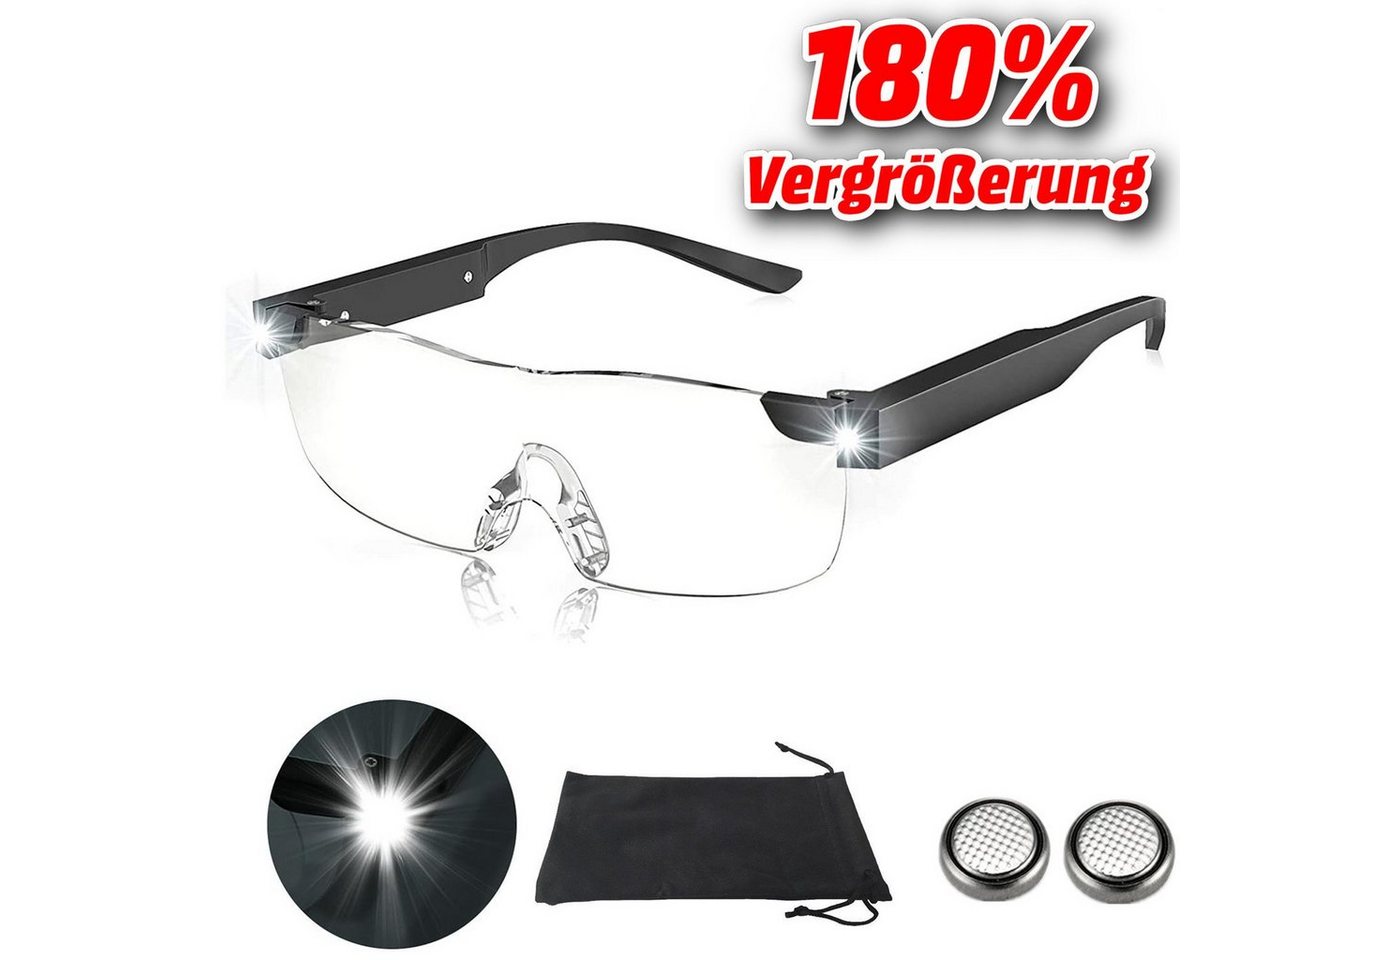 Olotos Lupenbrille LED Vergrößerungsbrille Leselupe Lesebrille Brille Lupe Vergrößerung, 180% Vergrößerung mit Stoffetui von Olotos